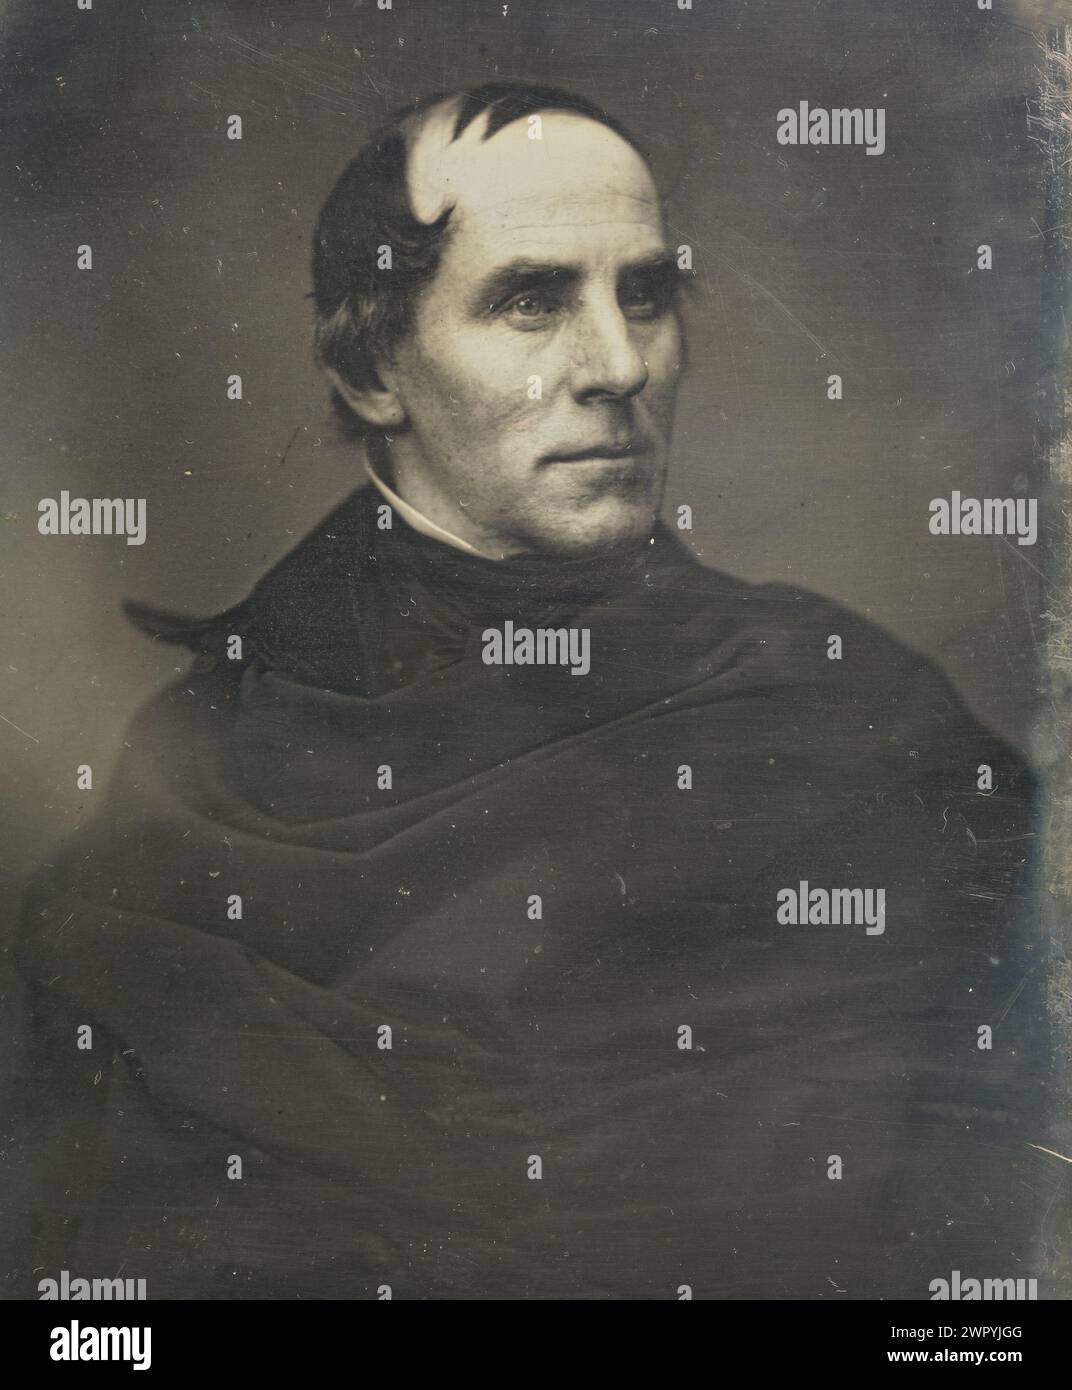 Portrait de l'artiste américain Thomas Cole (1841-1848), fondateur de l'Hudson River School of Art, daguerréotype par Mathew B. Brady vers 1845 Banque D'Images